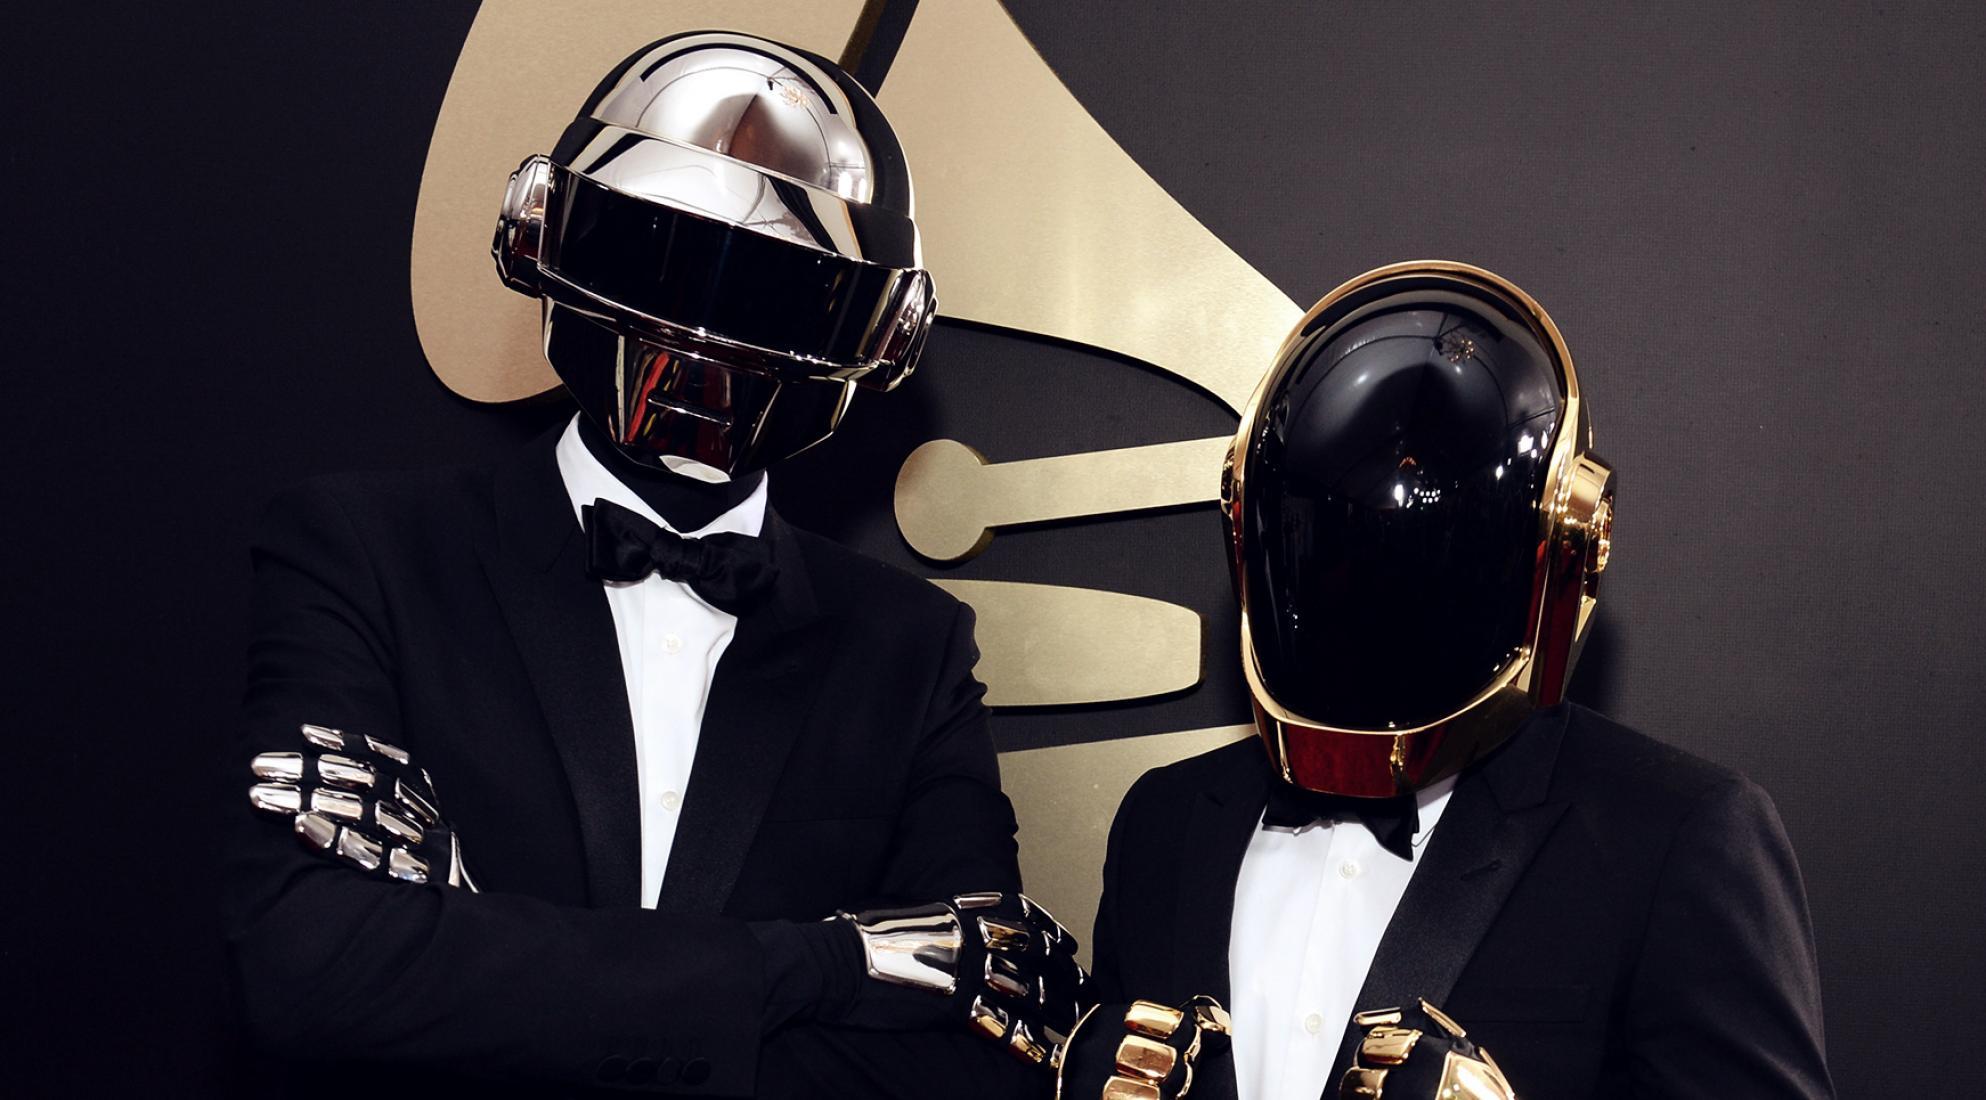 Daft Punk anuncia su separación tras 28 años de carrera artística